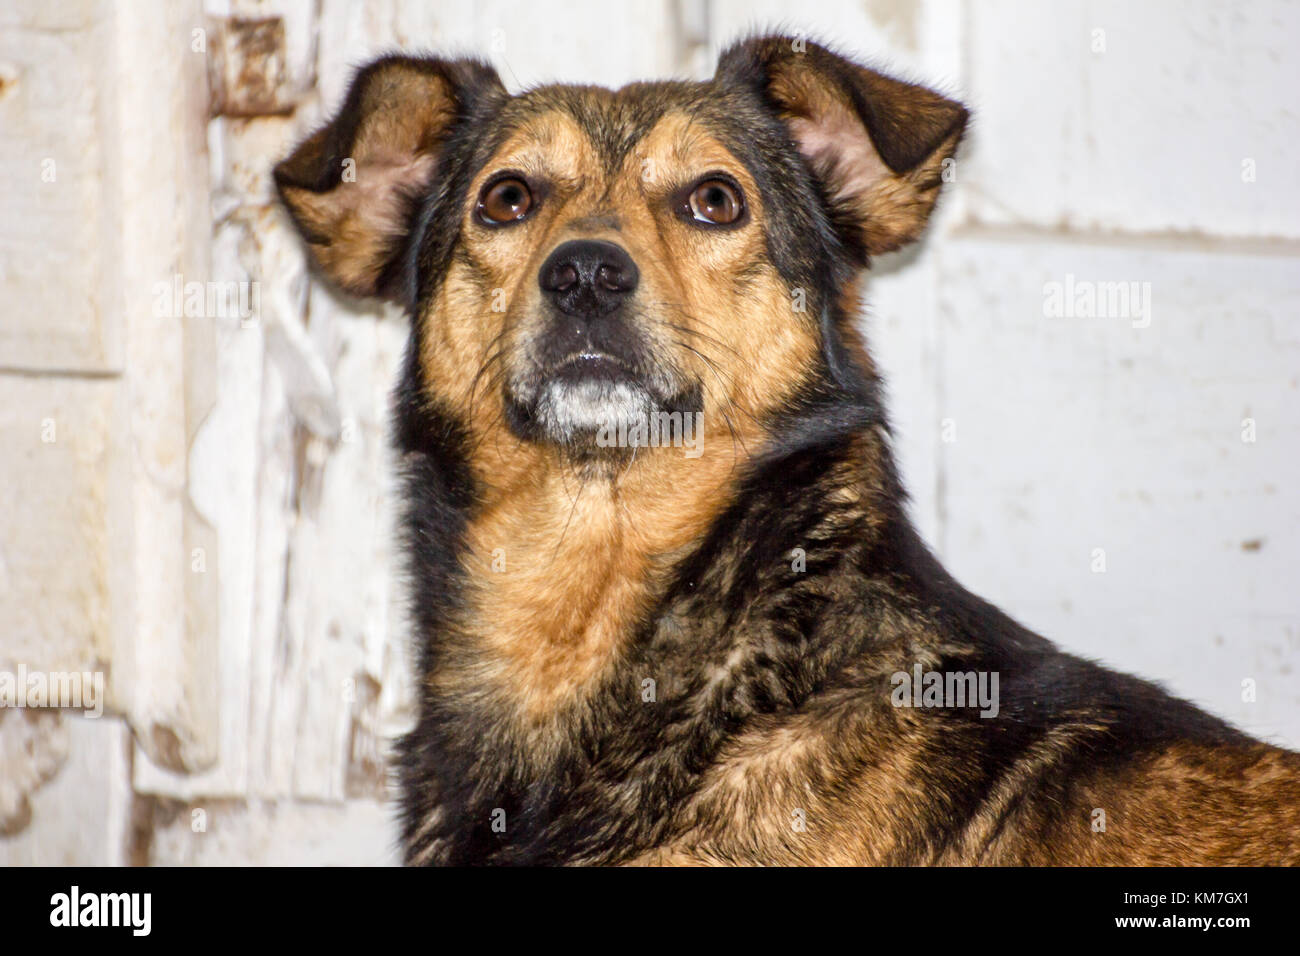 Hund vor einem alten hölzernen weiße Tür suchen oder starrte nach oben Stockfoto